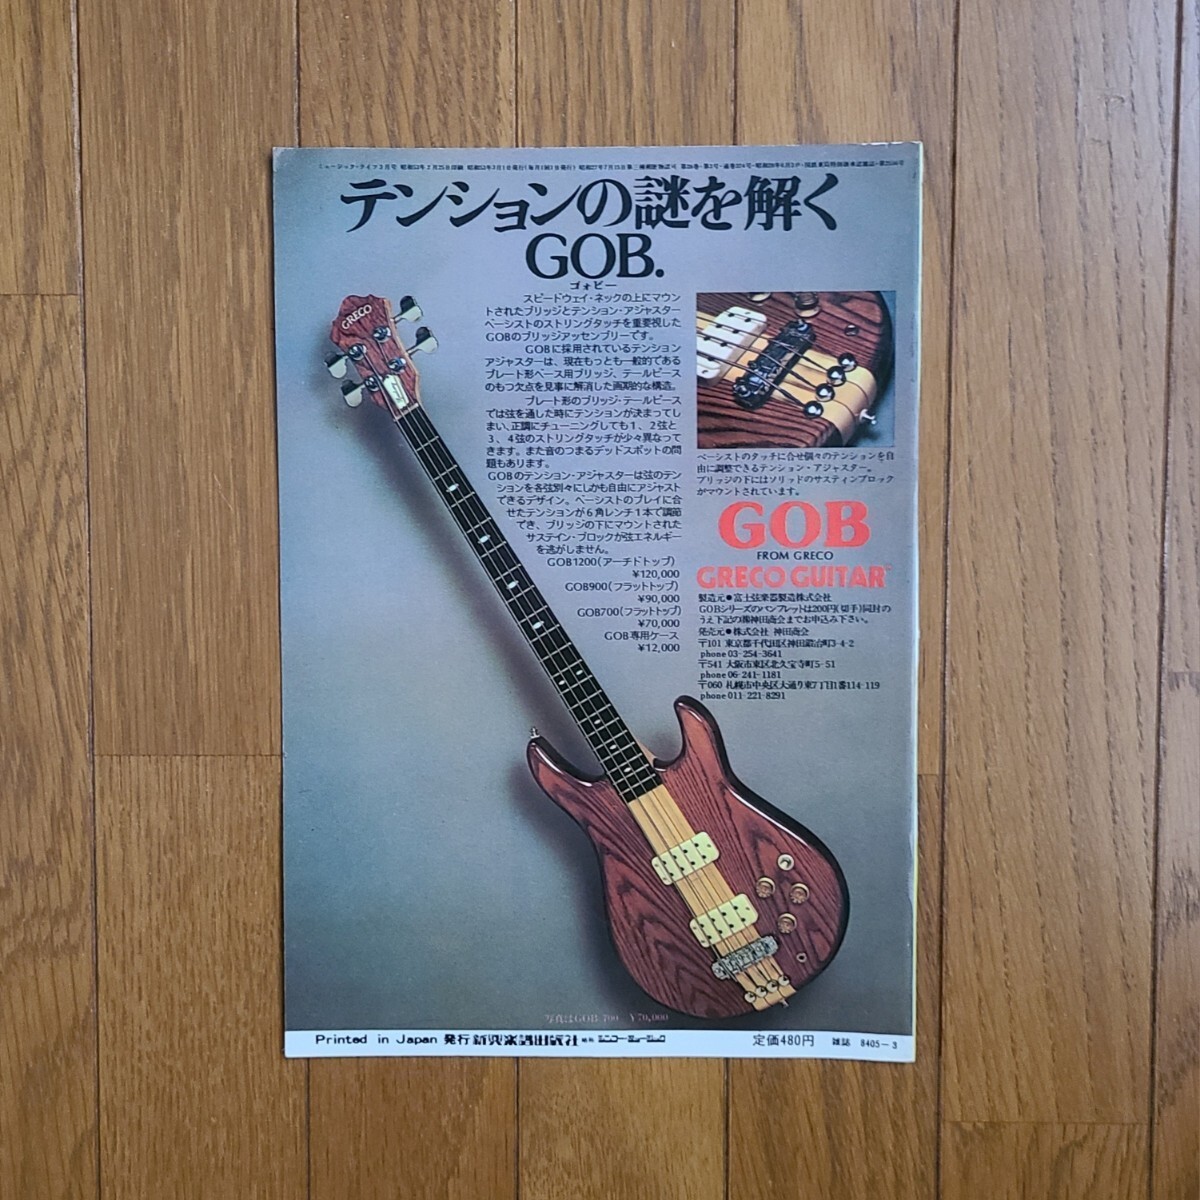 GRECO グレコ ベースギター広告 1977 1978 1979年【切り抜き】GRECO PMB800 TB900 PB700S GOB GOBⅡ 雑誌裏表紙/傷みあり_画像5